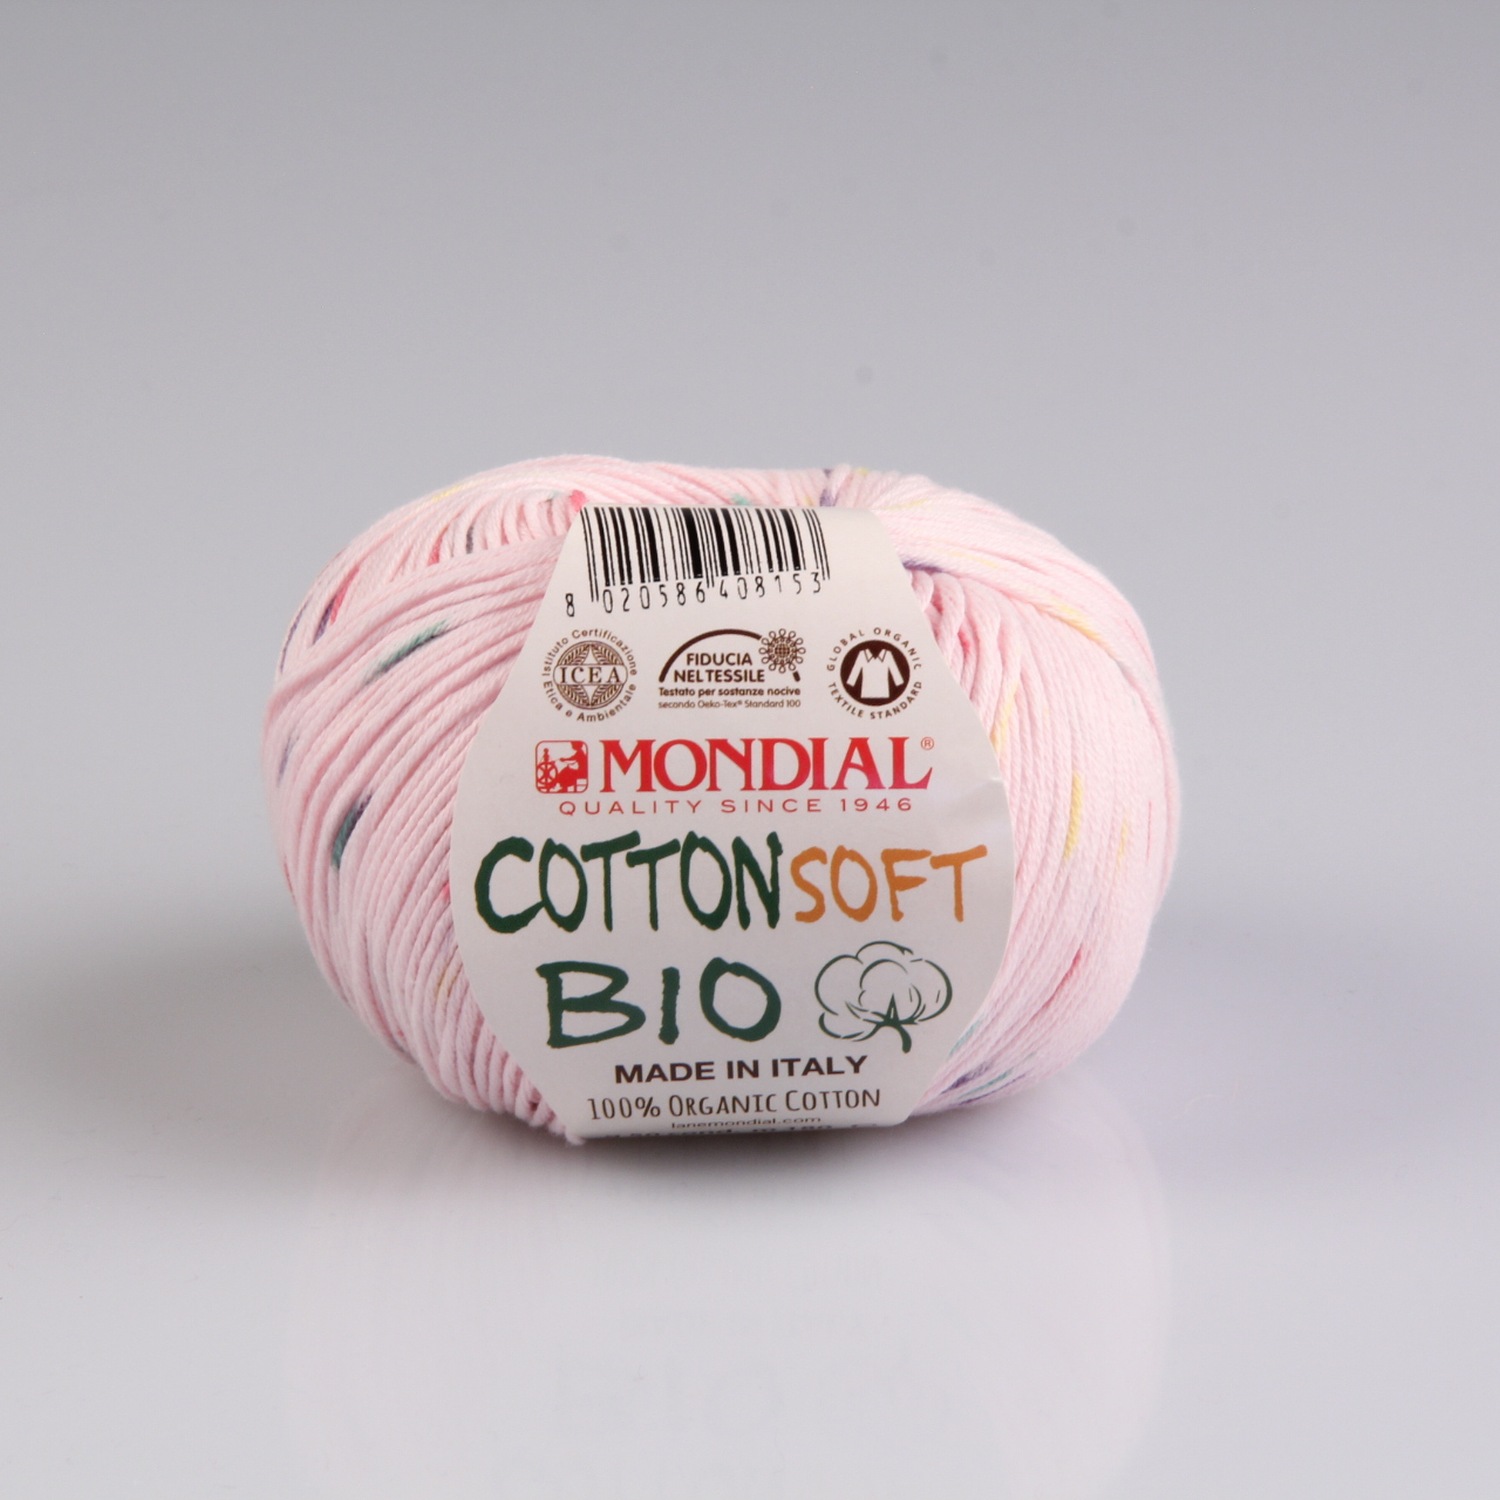 Mondial Cotton Soft Bio Color 50g, Filzgarn aus 100% Schurwolle